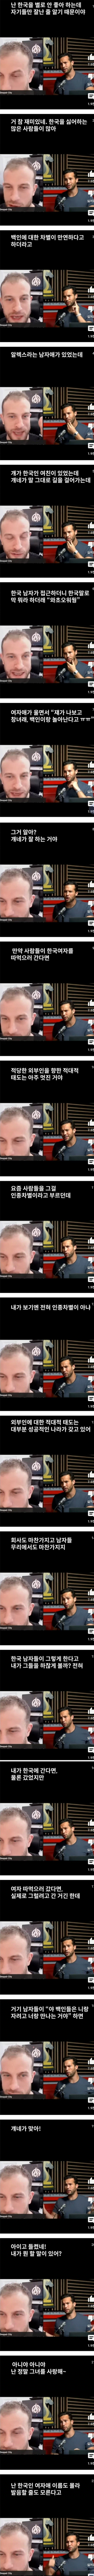 한국에 와서 욕 처먹은 백인 남성